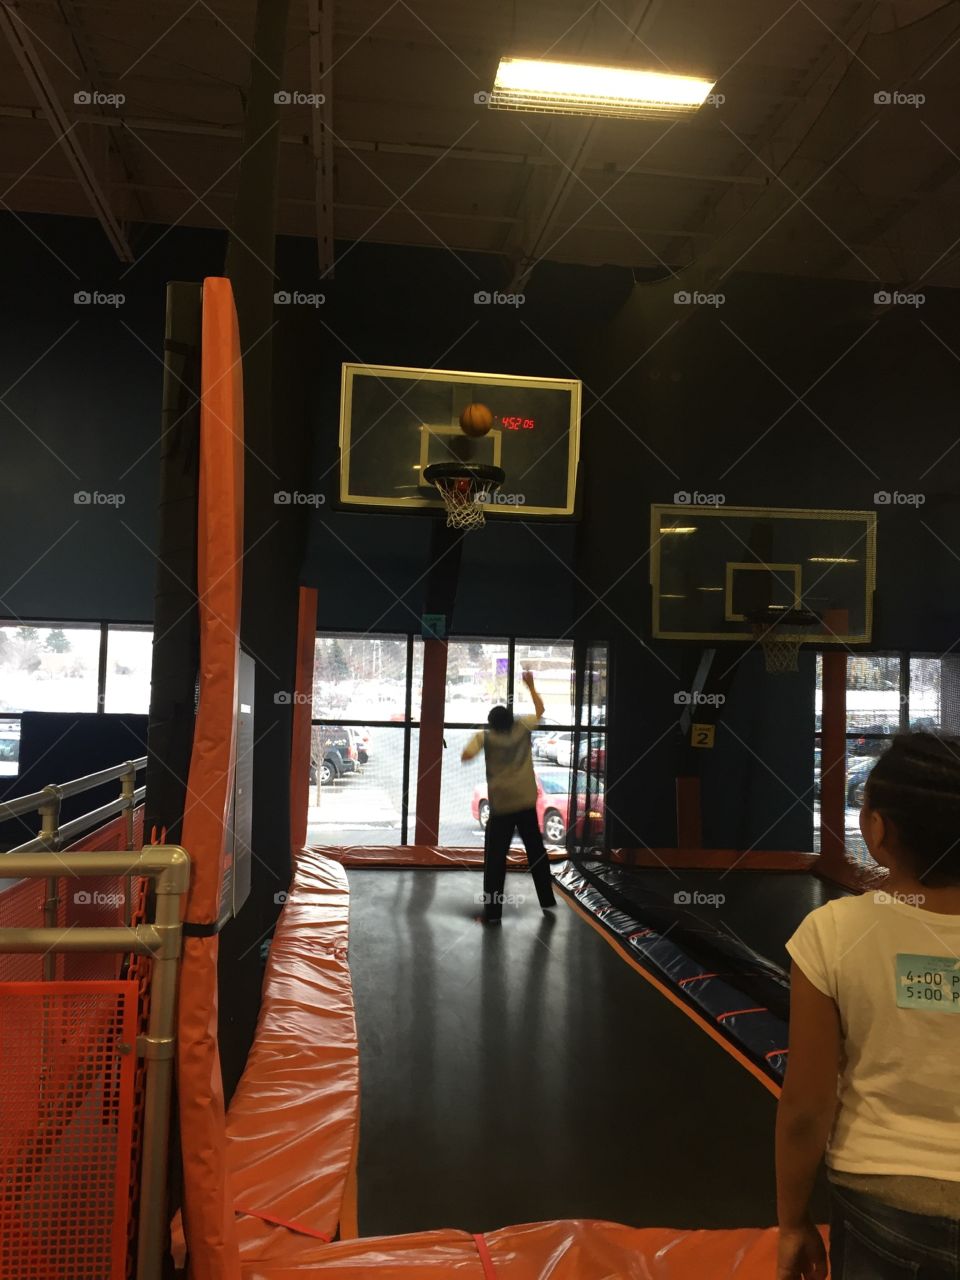 Bounce hoops